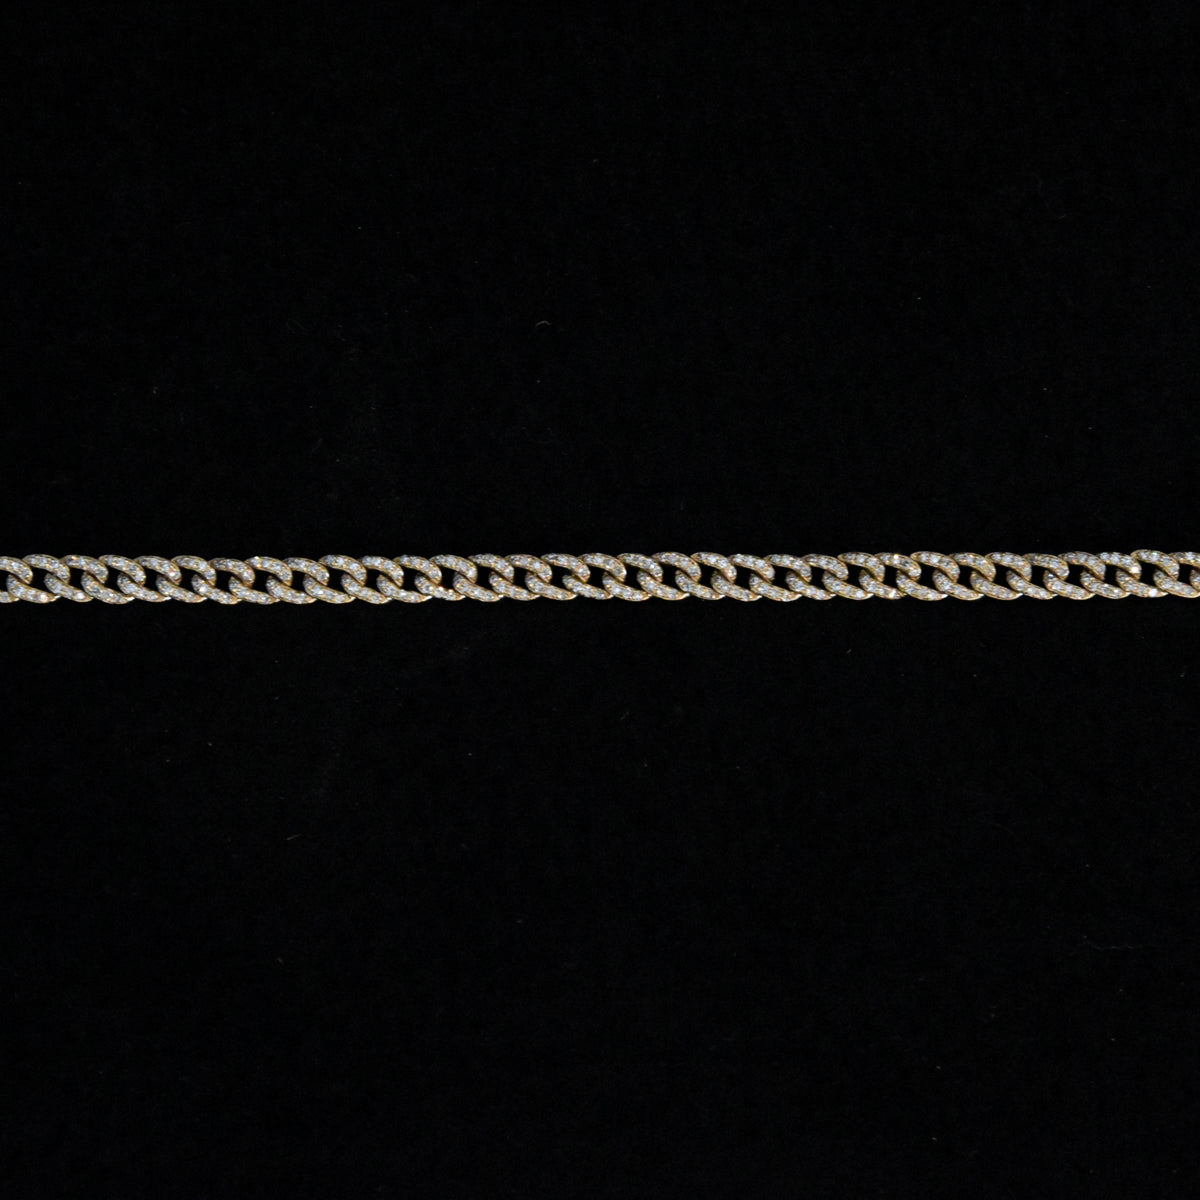 Diamond Pave Curb Link Gold Bracelet